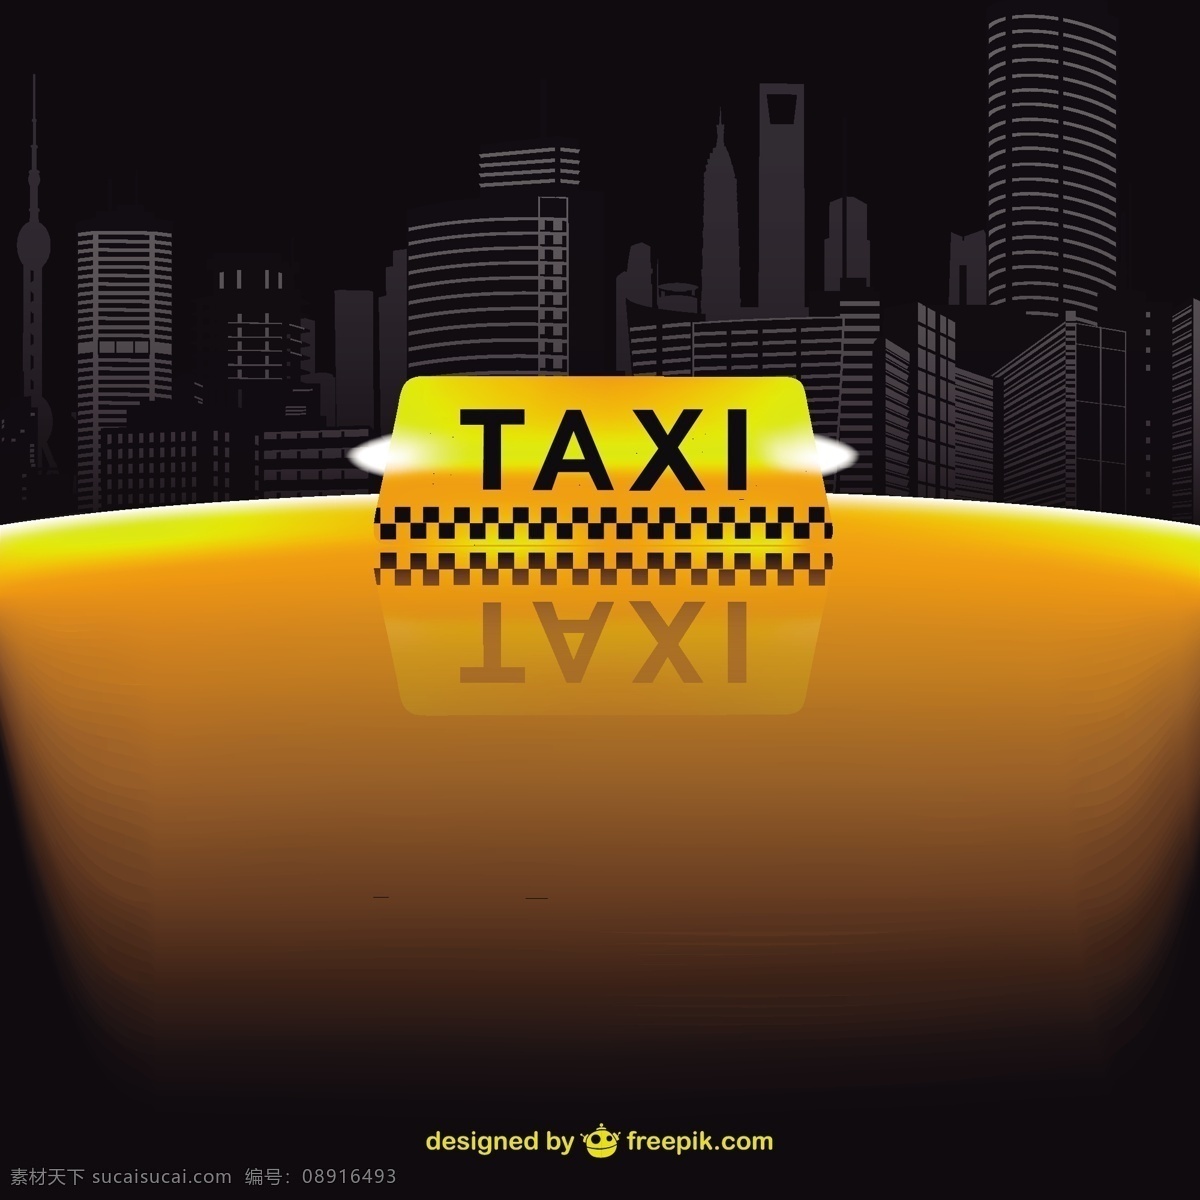 黄色 出租车 天际线 汽车 城市 模板 壁纸 图形 布局 标志 平面设计 黑色 夜间 交通 现代 插图 符号 背景